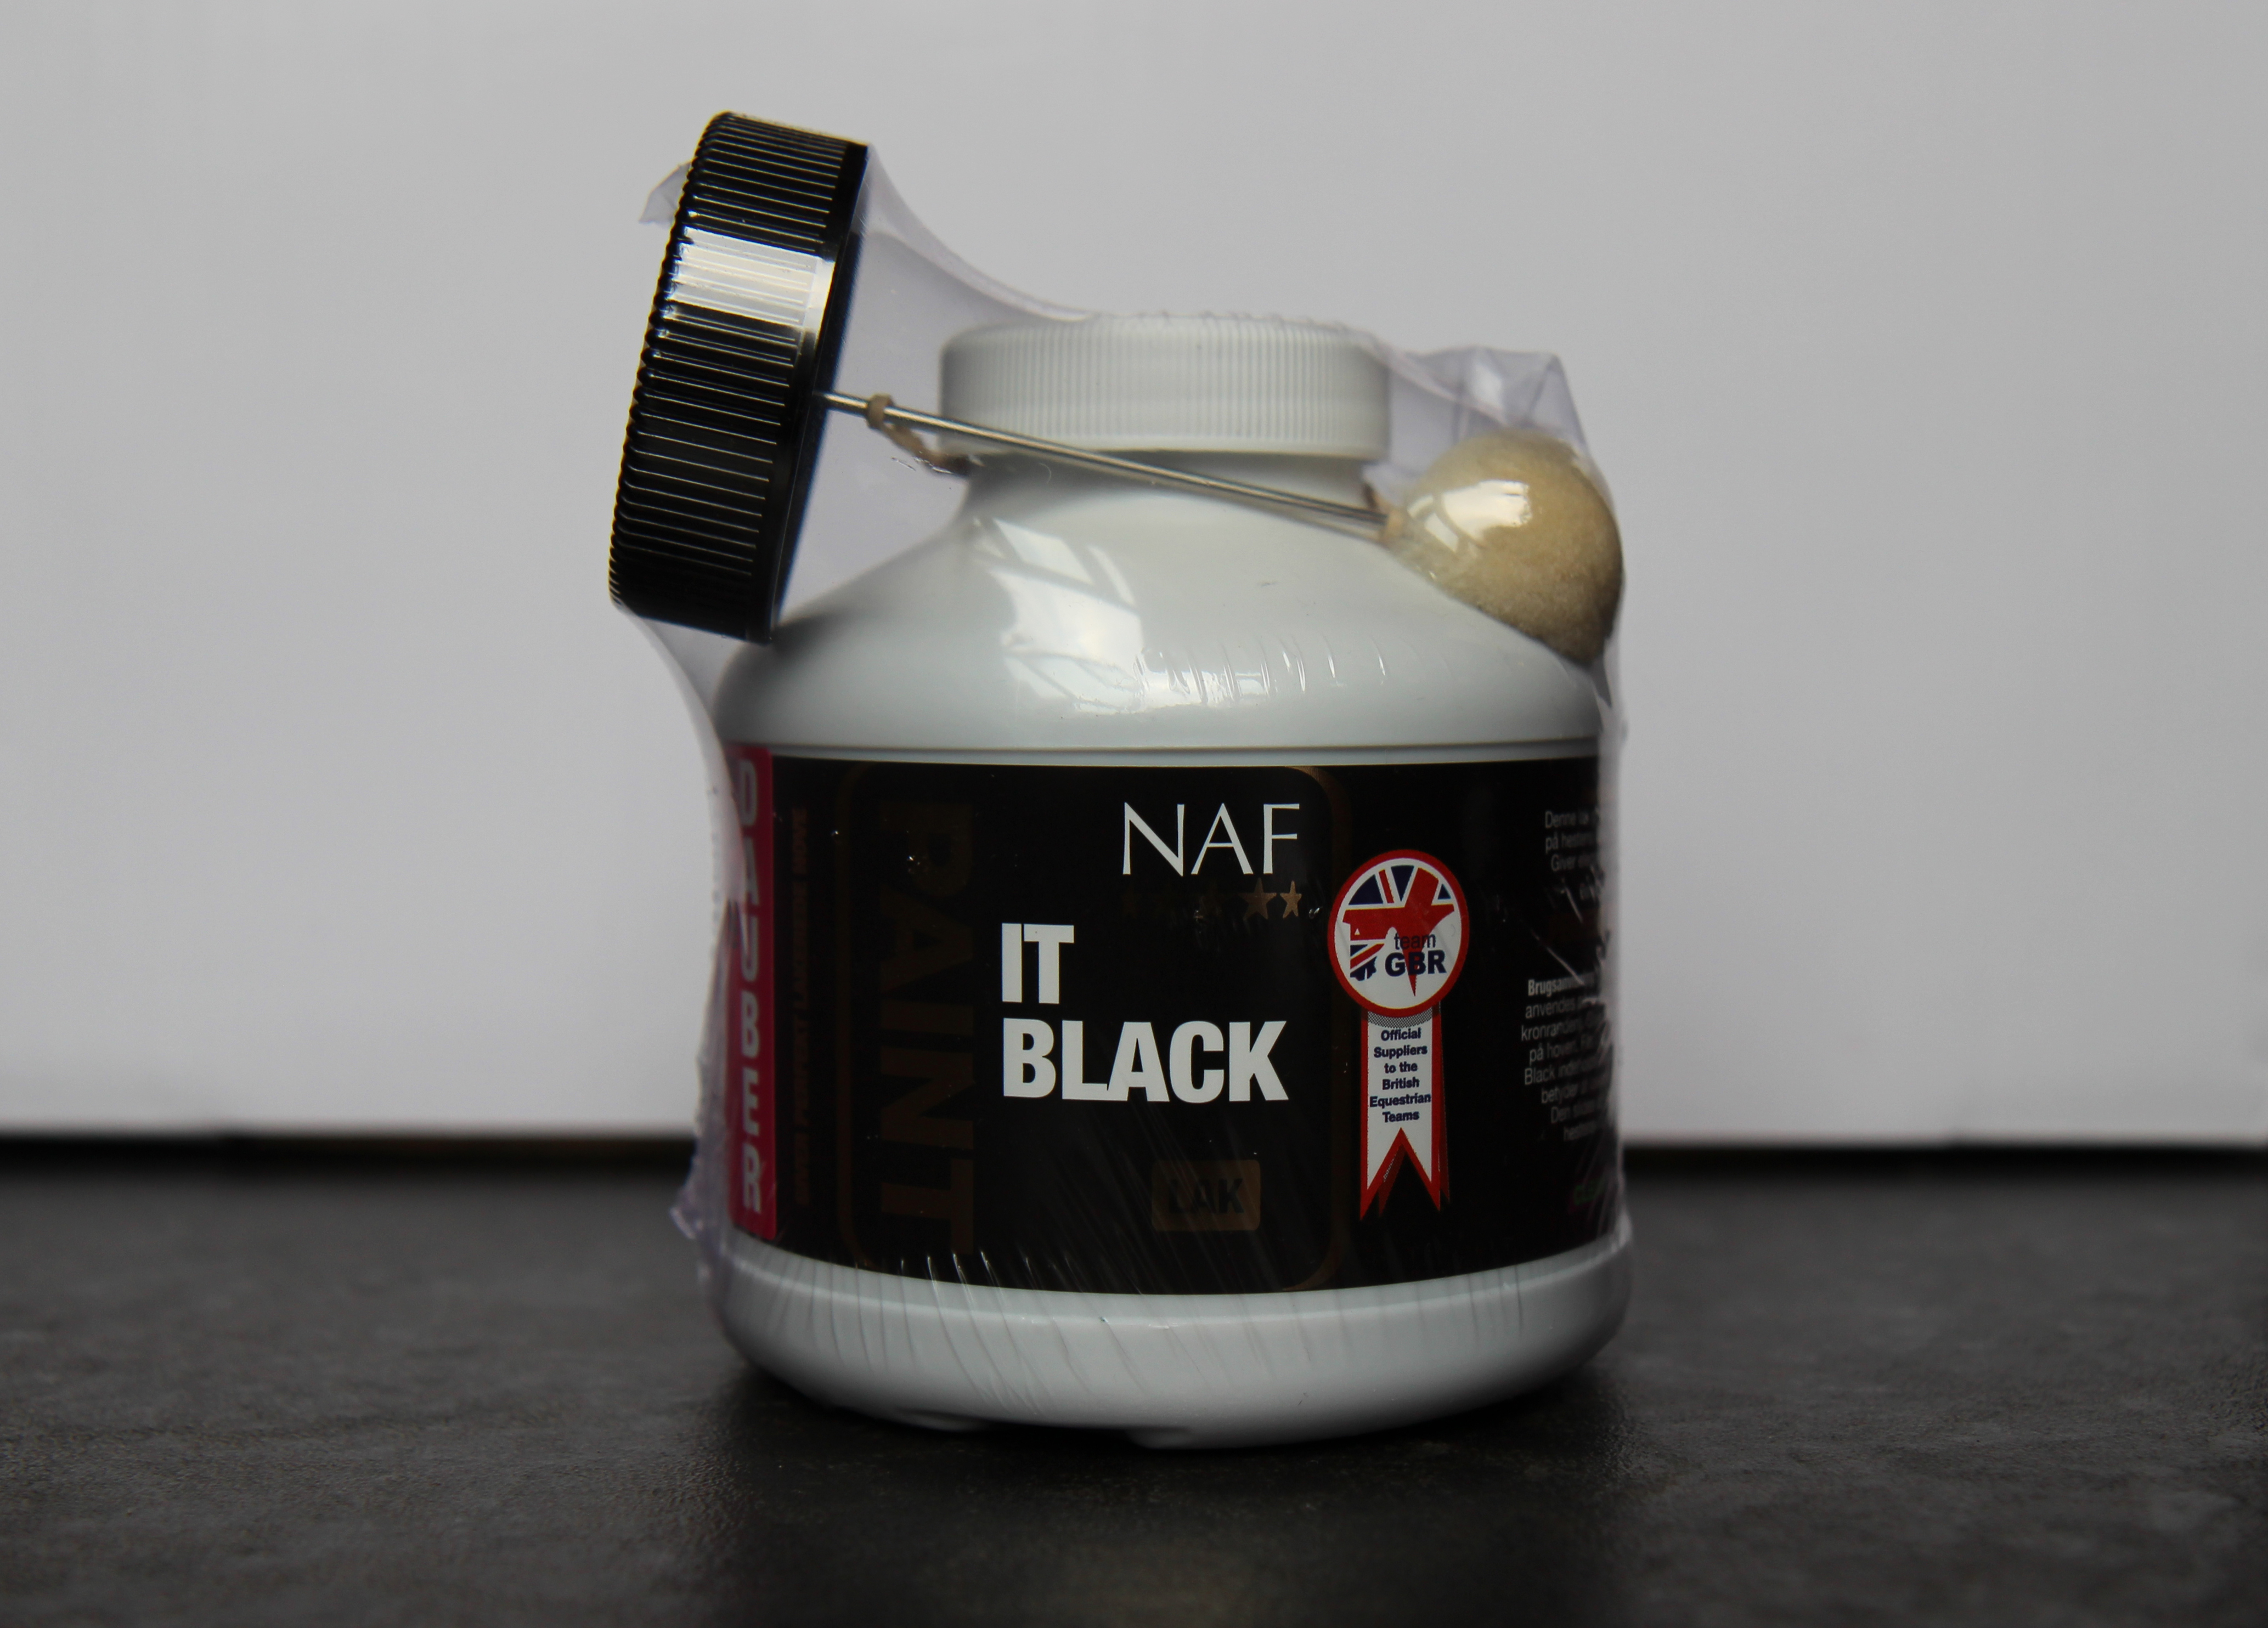 NAF paint it black